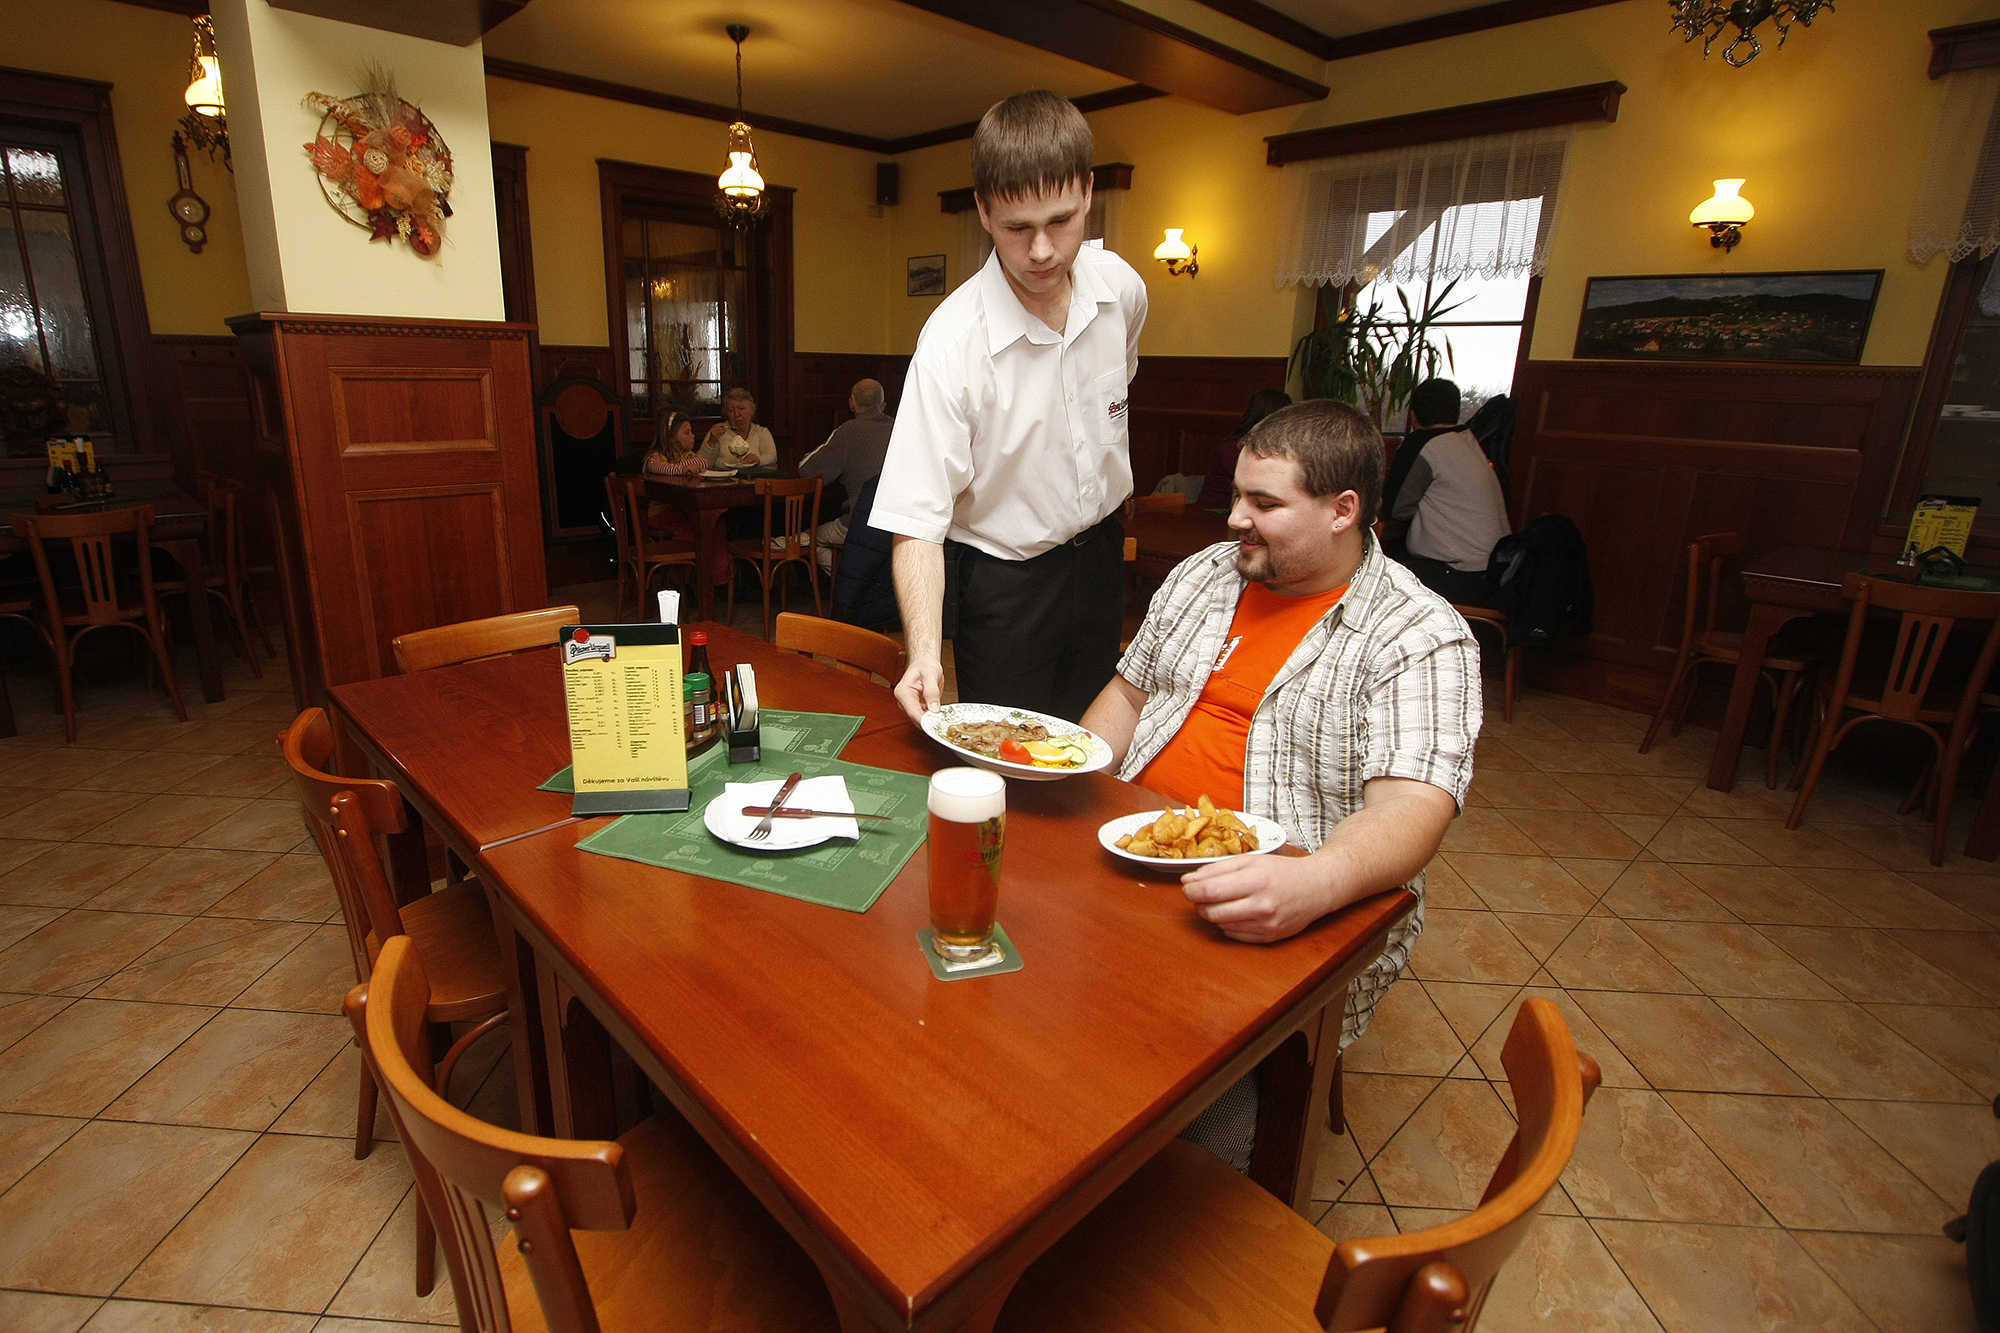 Hospoda, restaurace, pohostinství, pivo (ilustační foto)